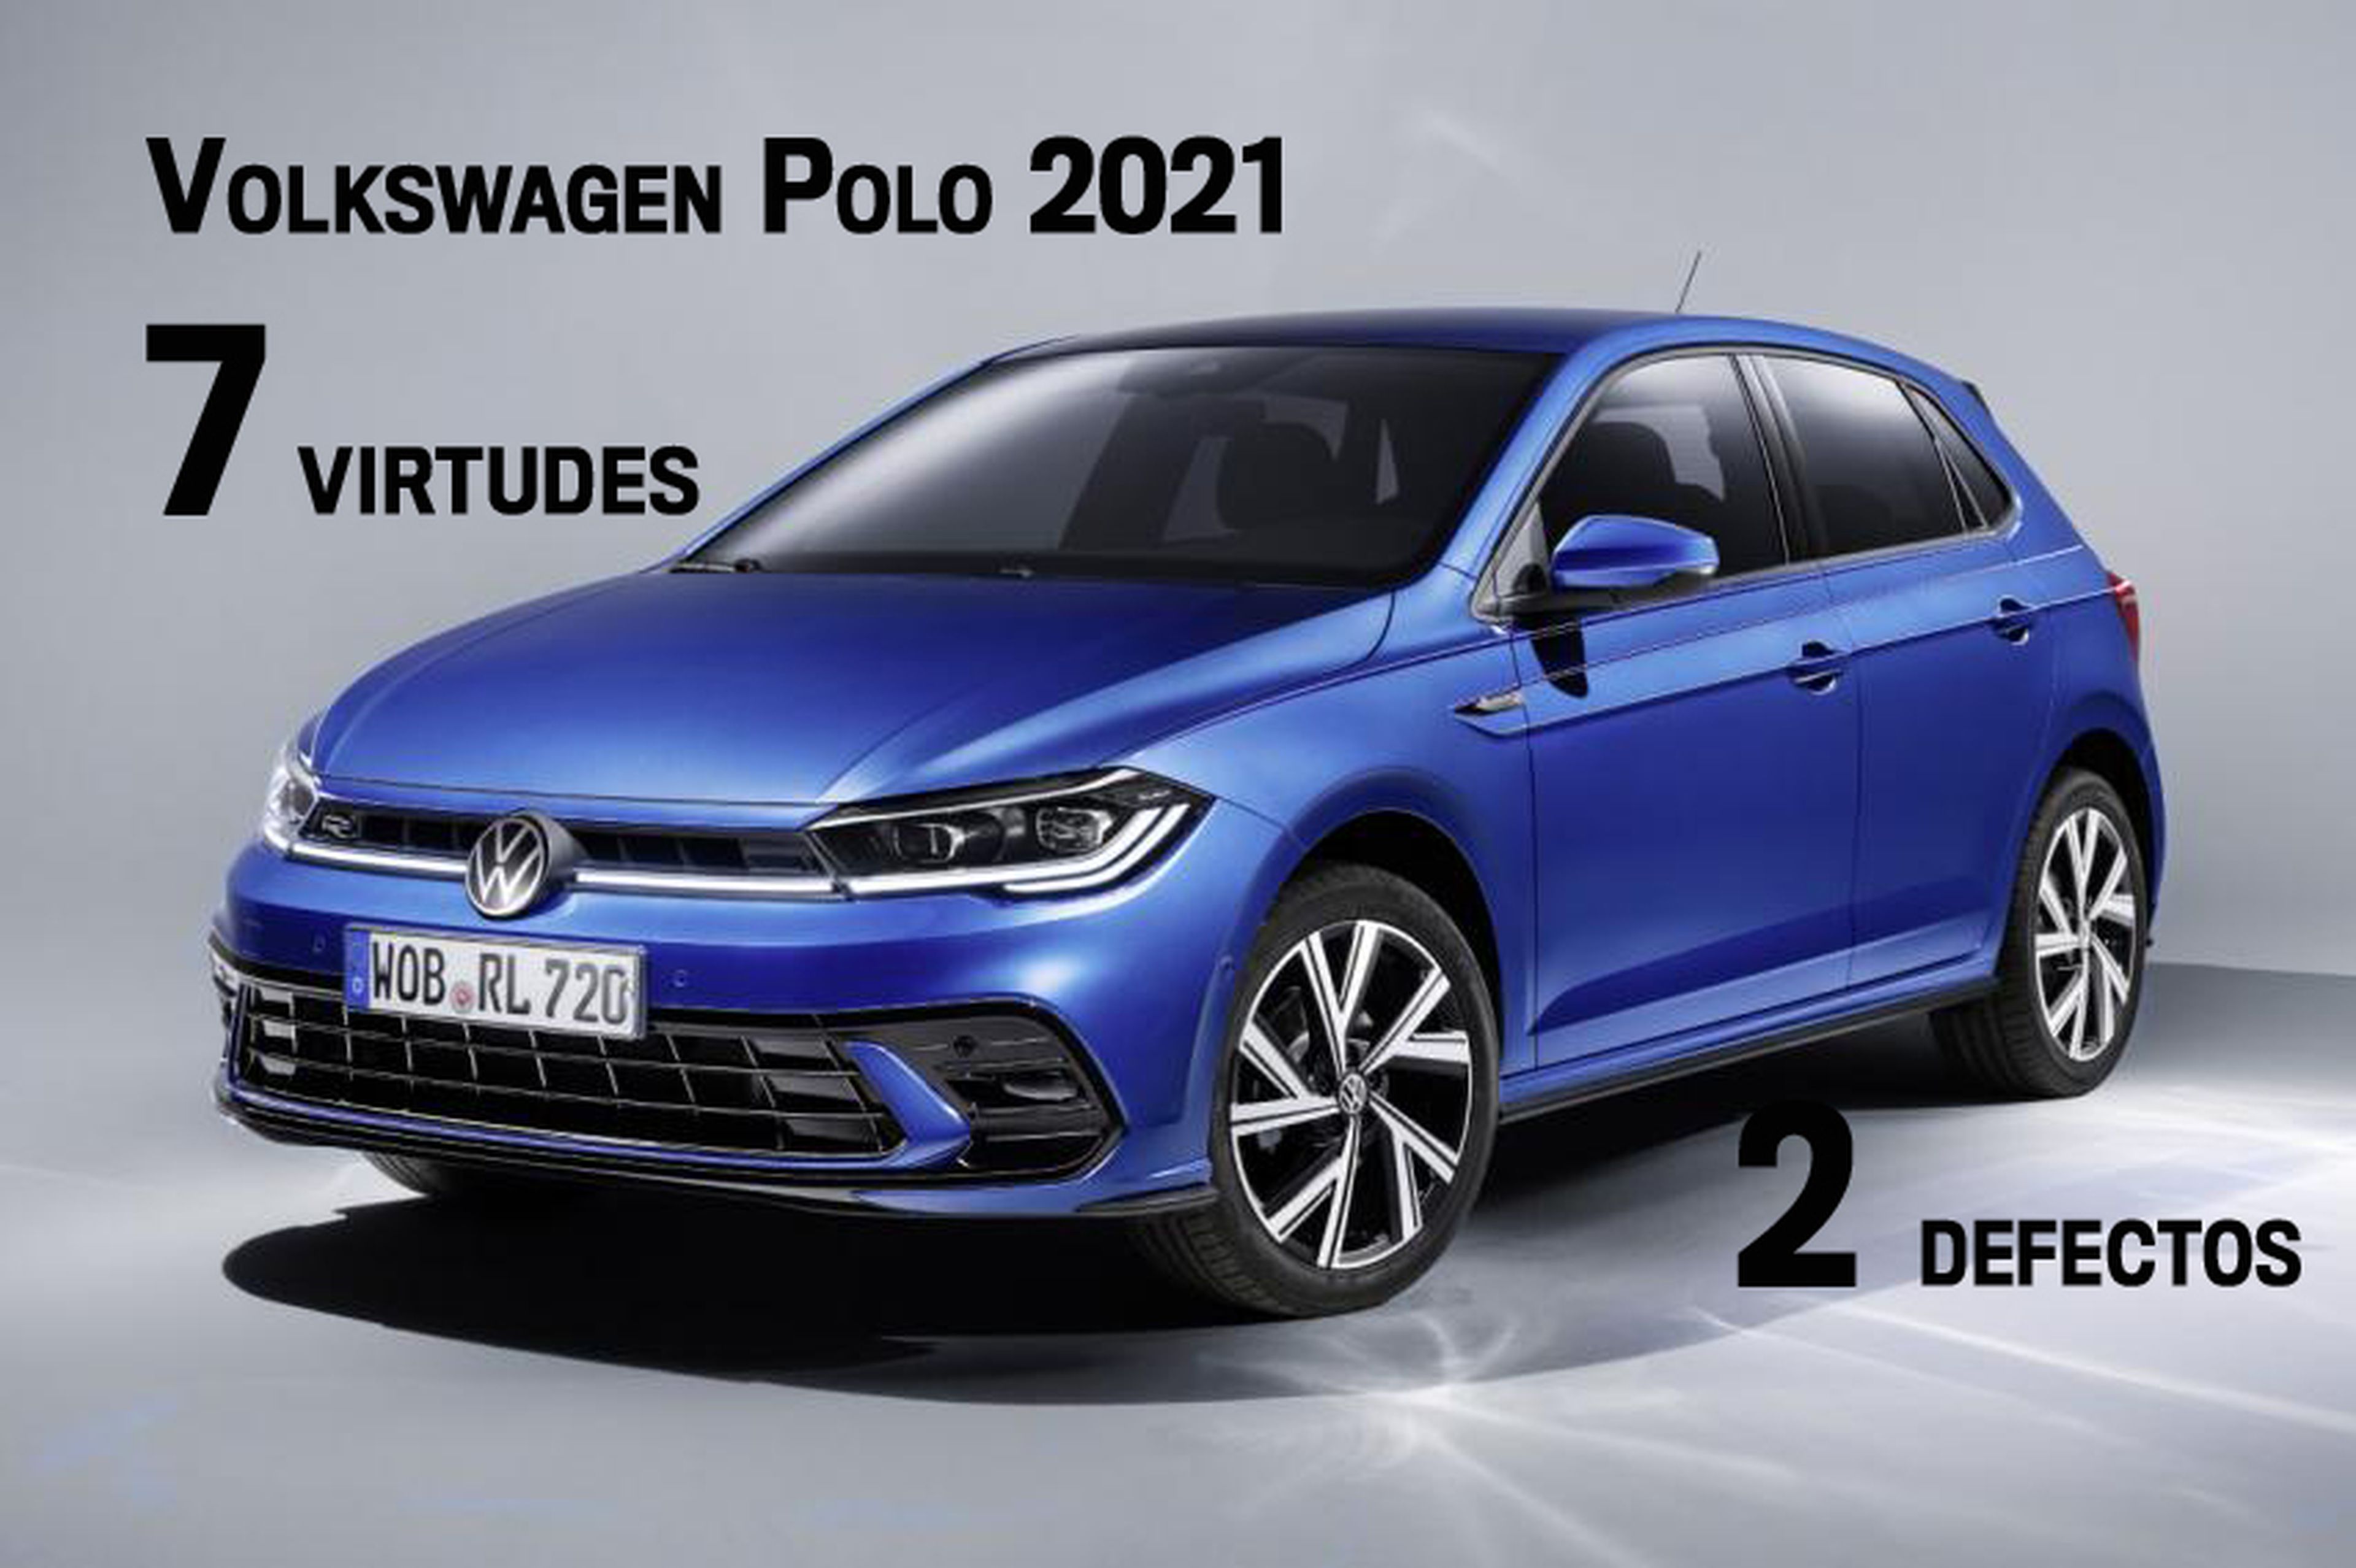 VW Polo 2021, 7 virtudes y 2 defectos